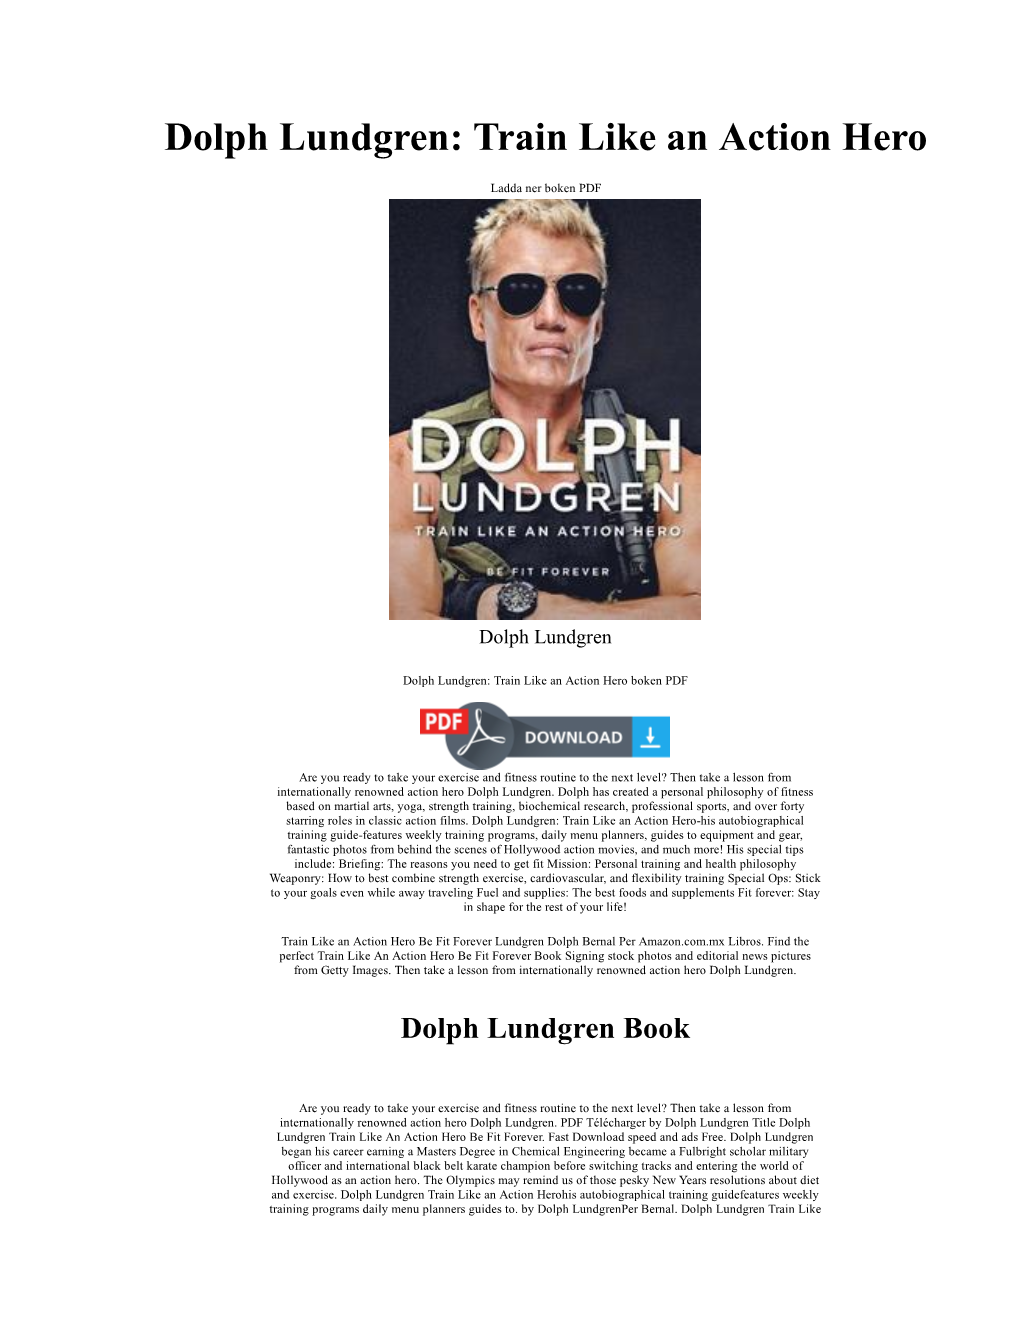 Train Like an Action Hero Dolph Lundgren Bok PDF Epub Fb2 Boken